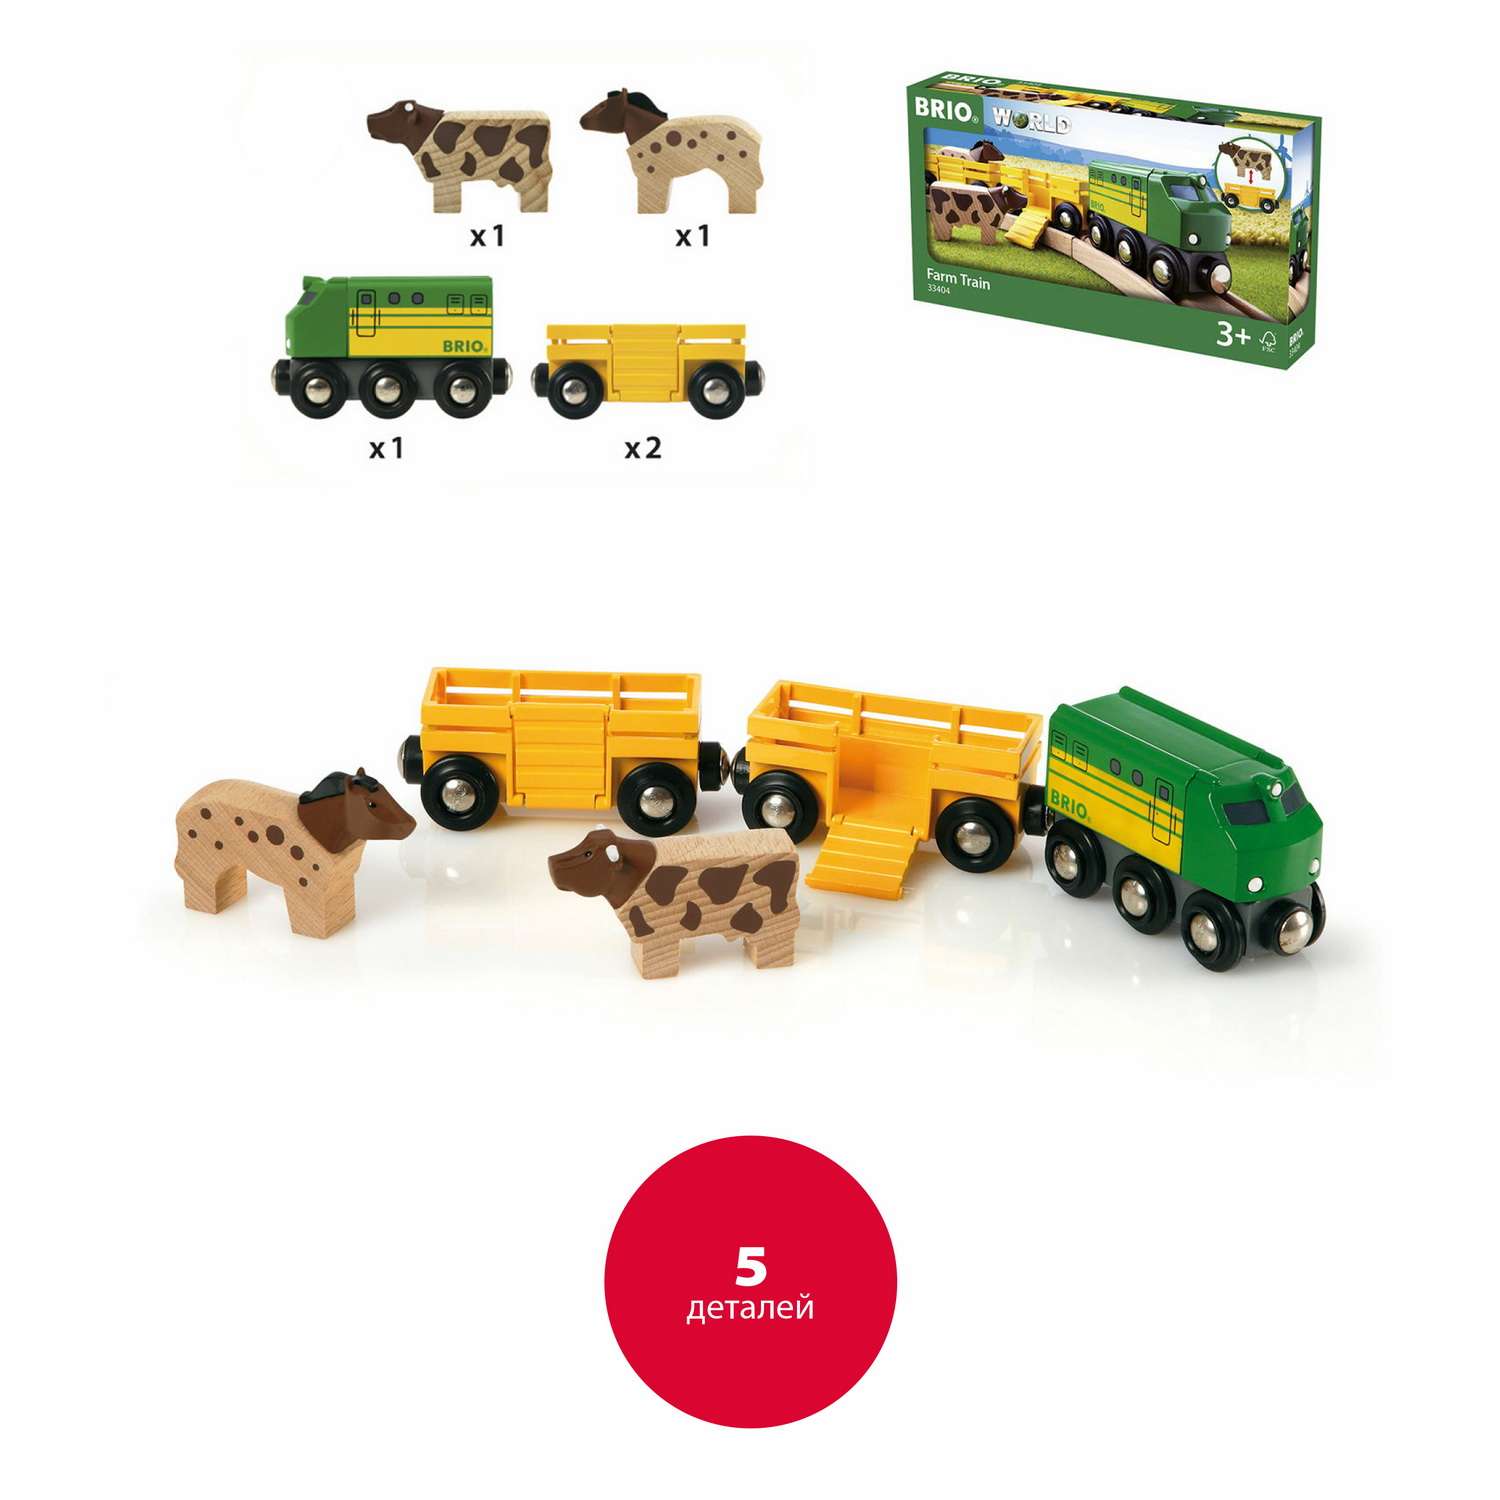 Железная дорога деревянная BRIO 3 грузовых вагона с животными 5 элементов - фото 2